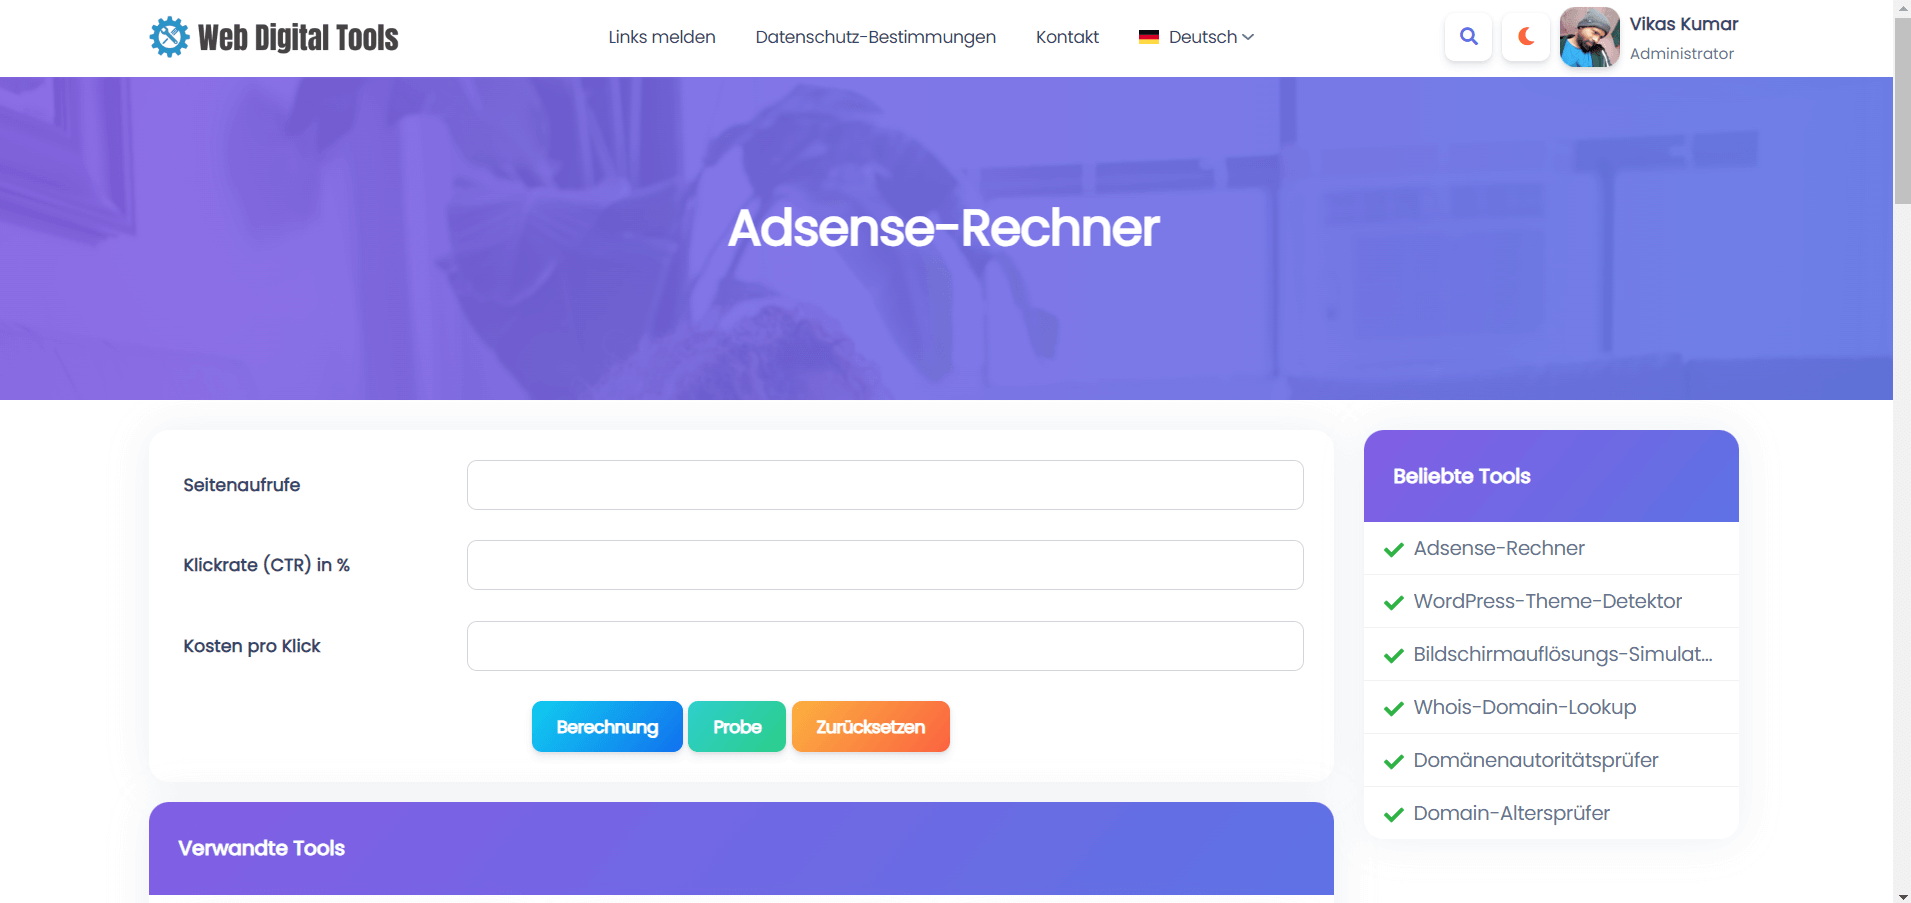 Adsense-Rechner